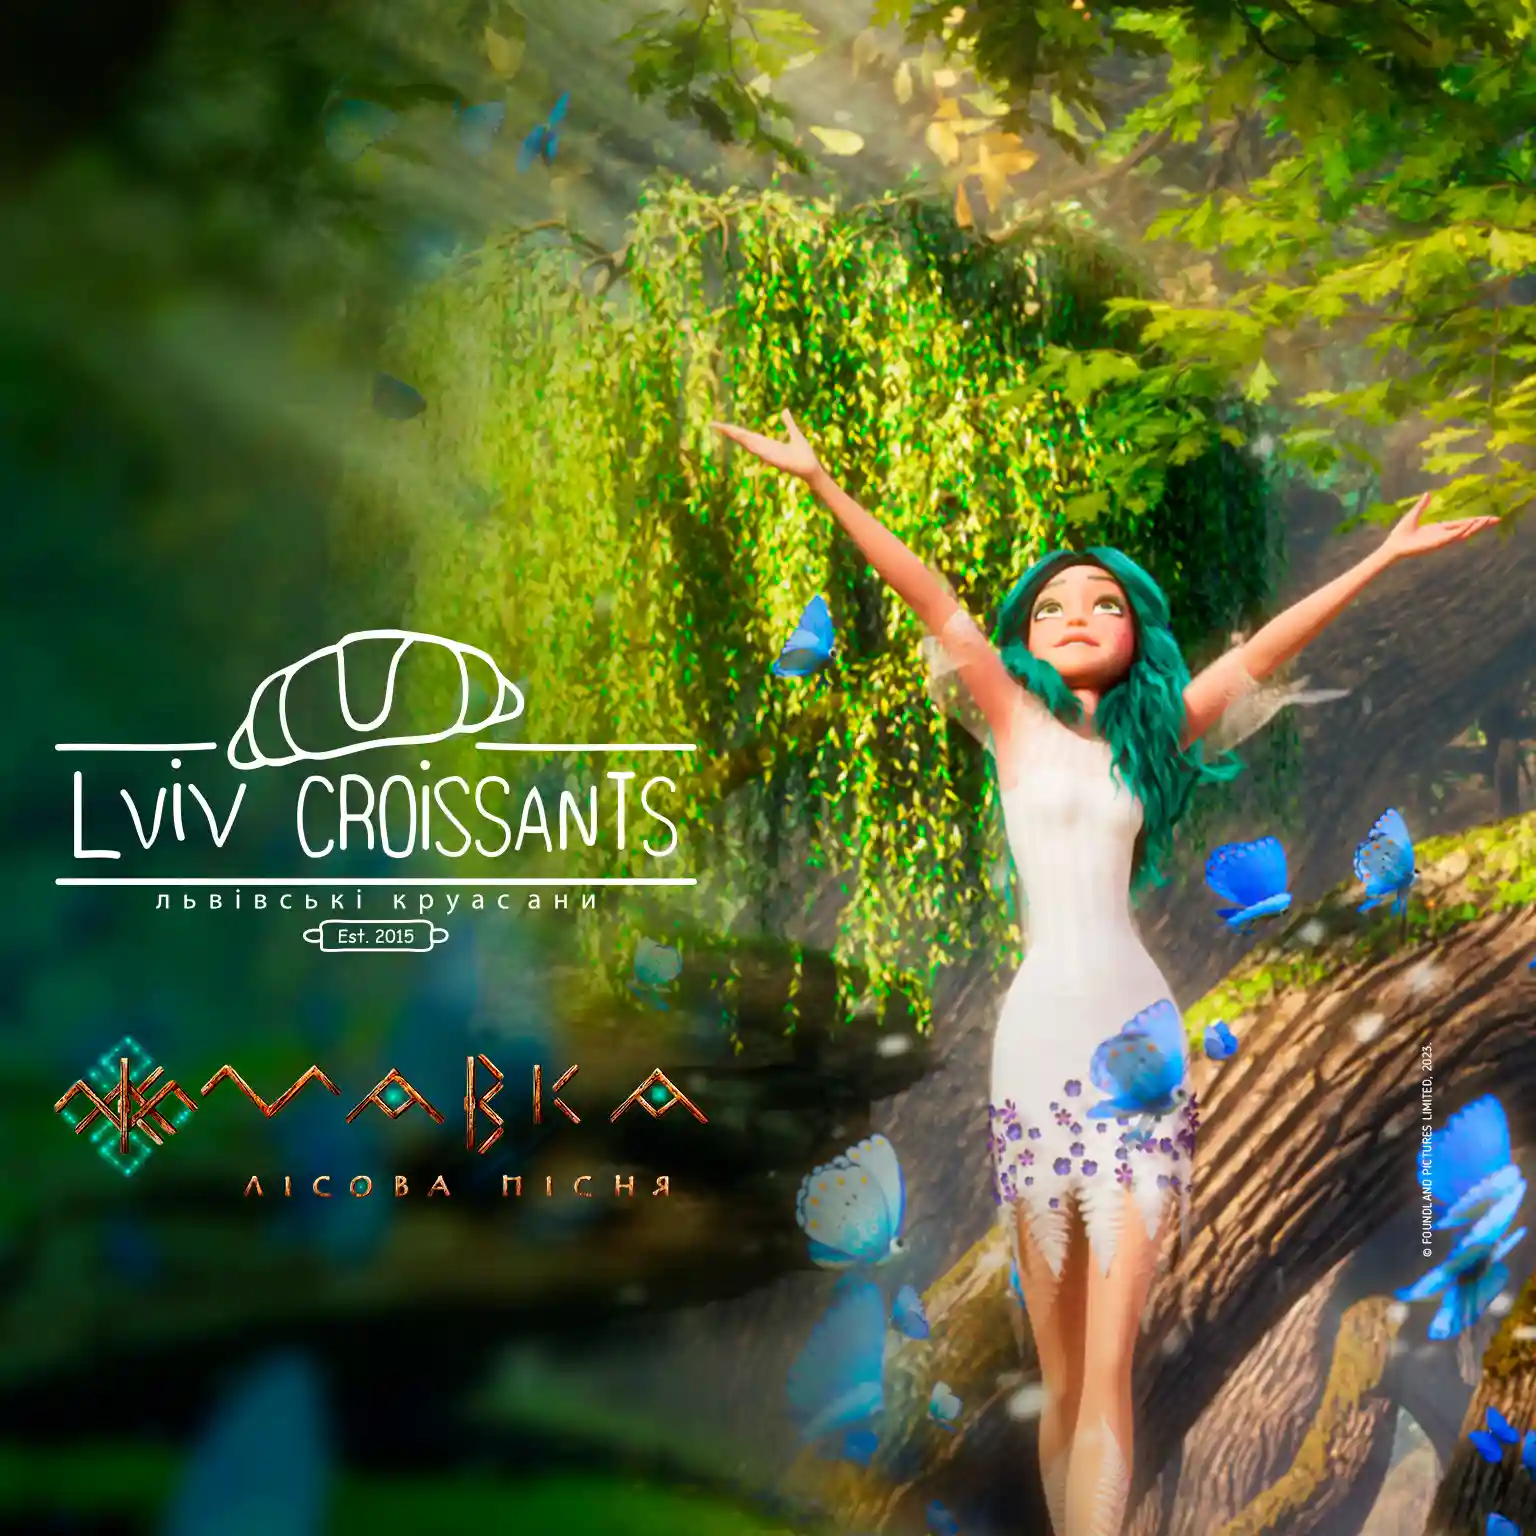 "Dotknij magicznego świata z „Mavką i strażnikami lasu”! Odkryj w sobie supermoc i dziel się nią z innymi. Dołącz do nas od 1 sierpnia w piekarniach Lviv Croissant w Polsce.